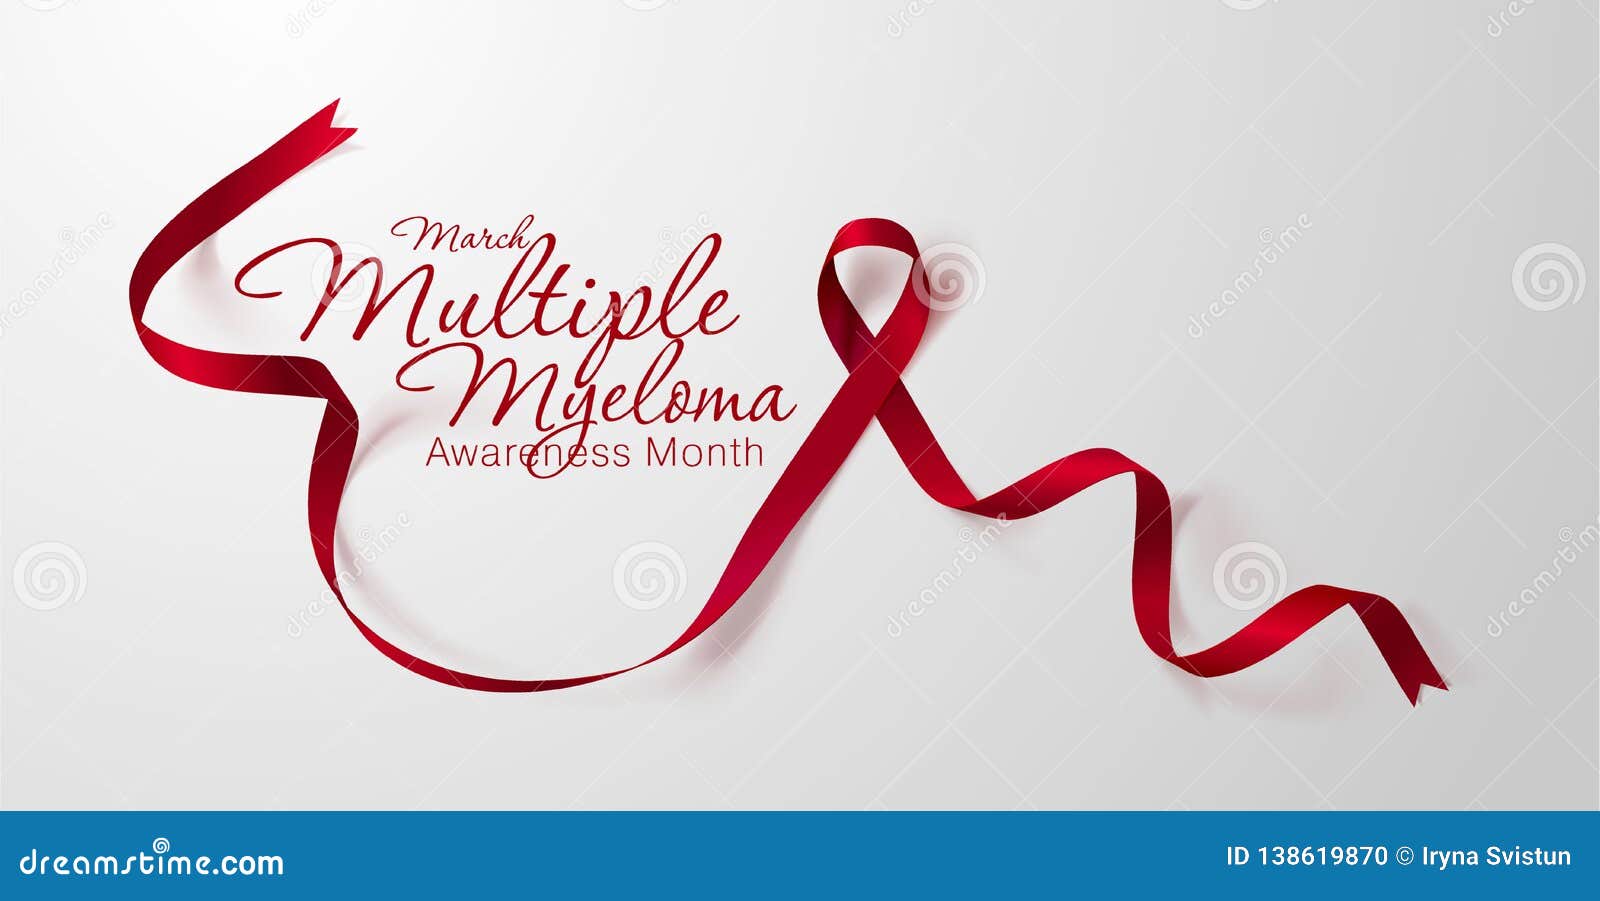 Multiple Myeloma Awareness Cancer Ribbon Burgundy 22oz Vacuum Insulated Bottle